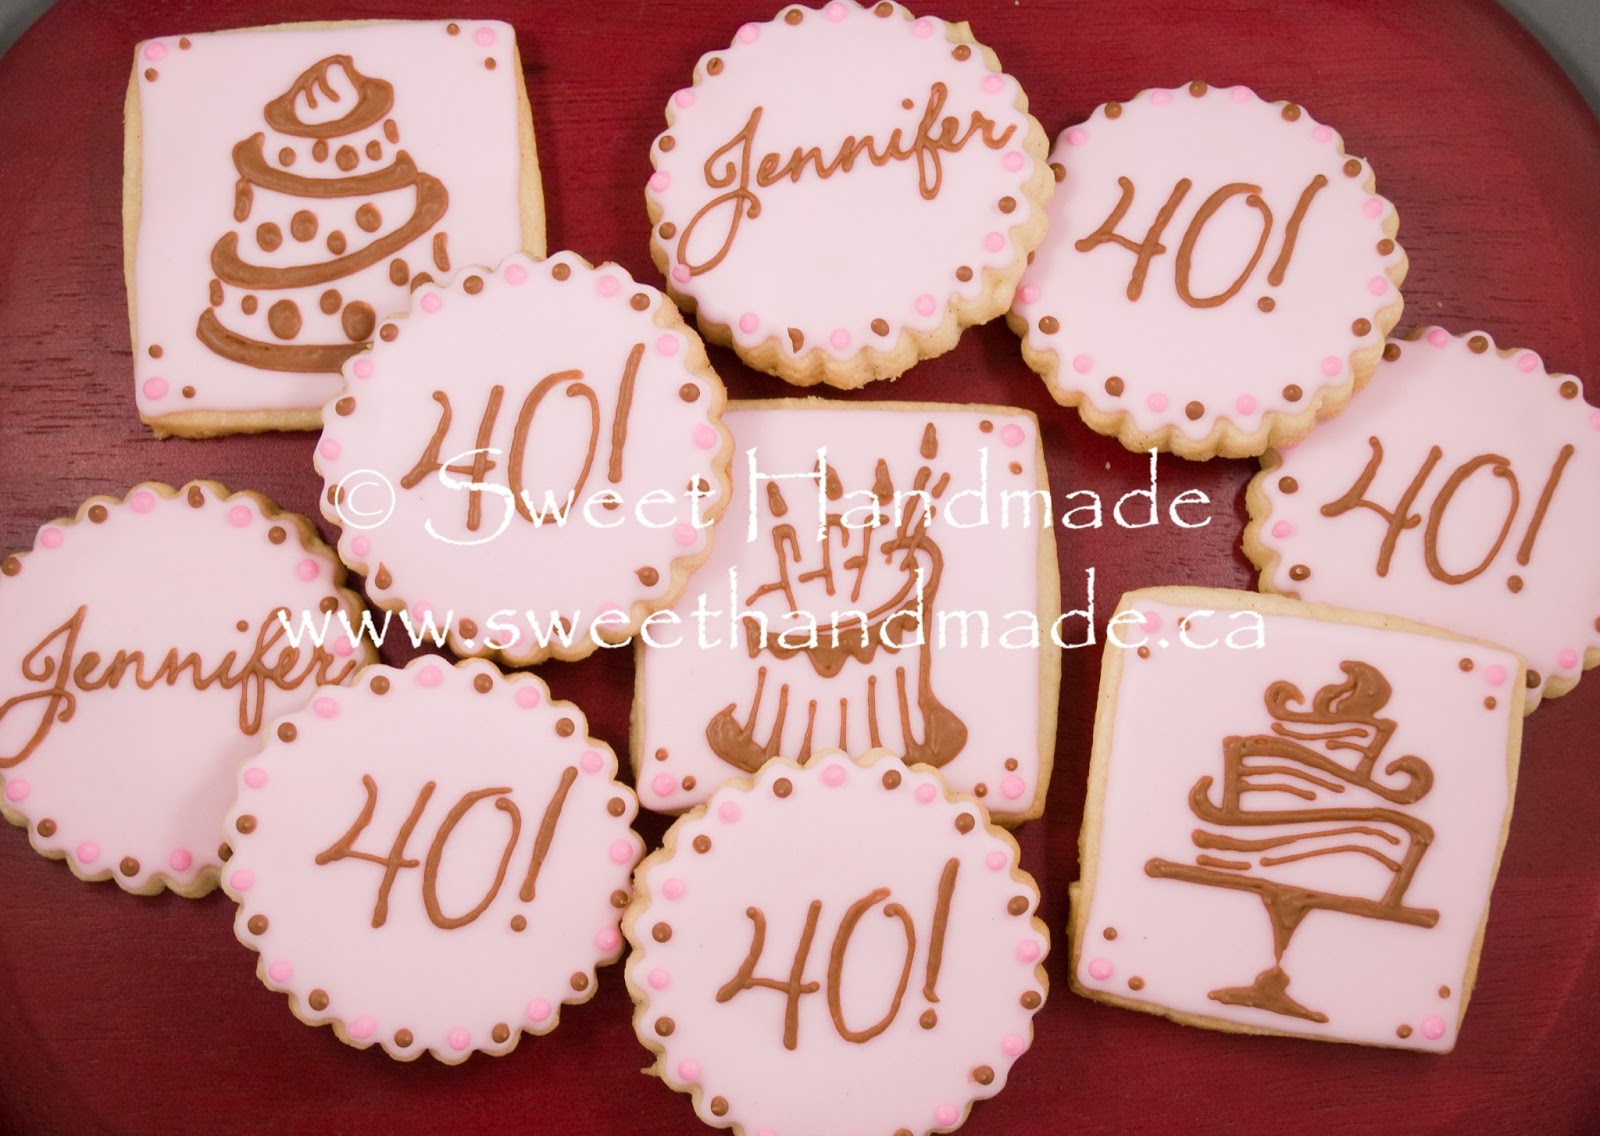 Sweet Handmade Cookies: 40th Birthday Cookie Set